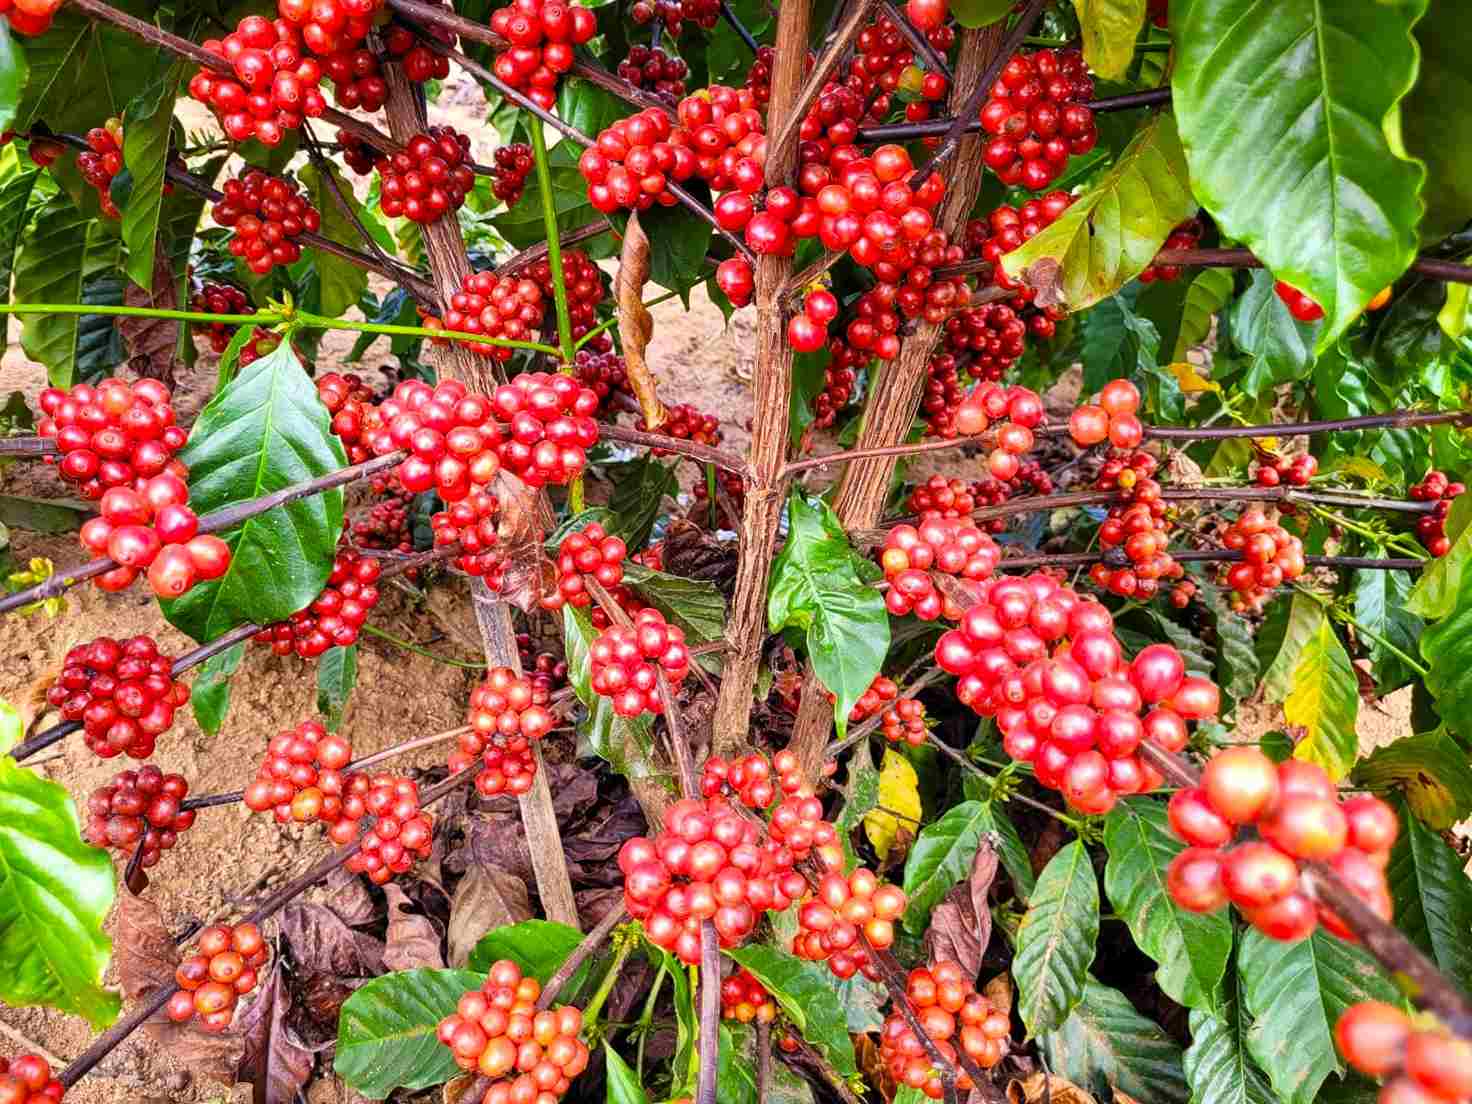 Comercialização de mudas de café Conilon deve iniciar em breve em Minas Gerais